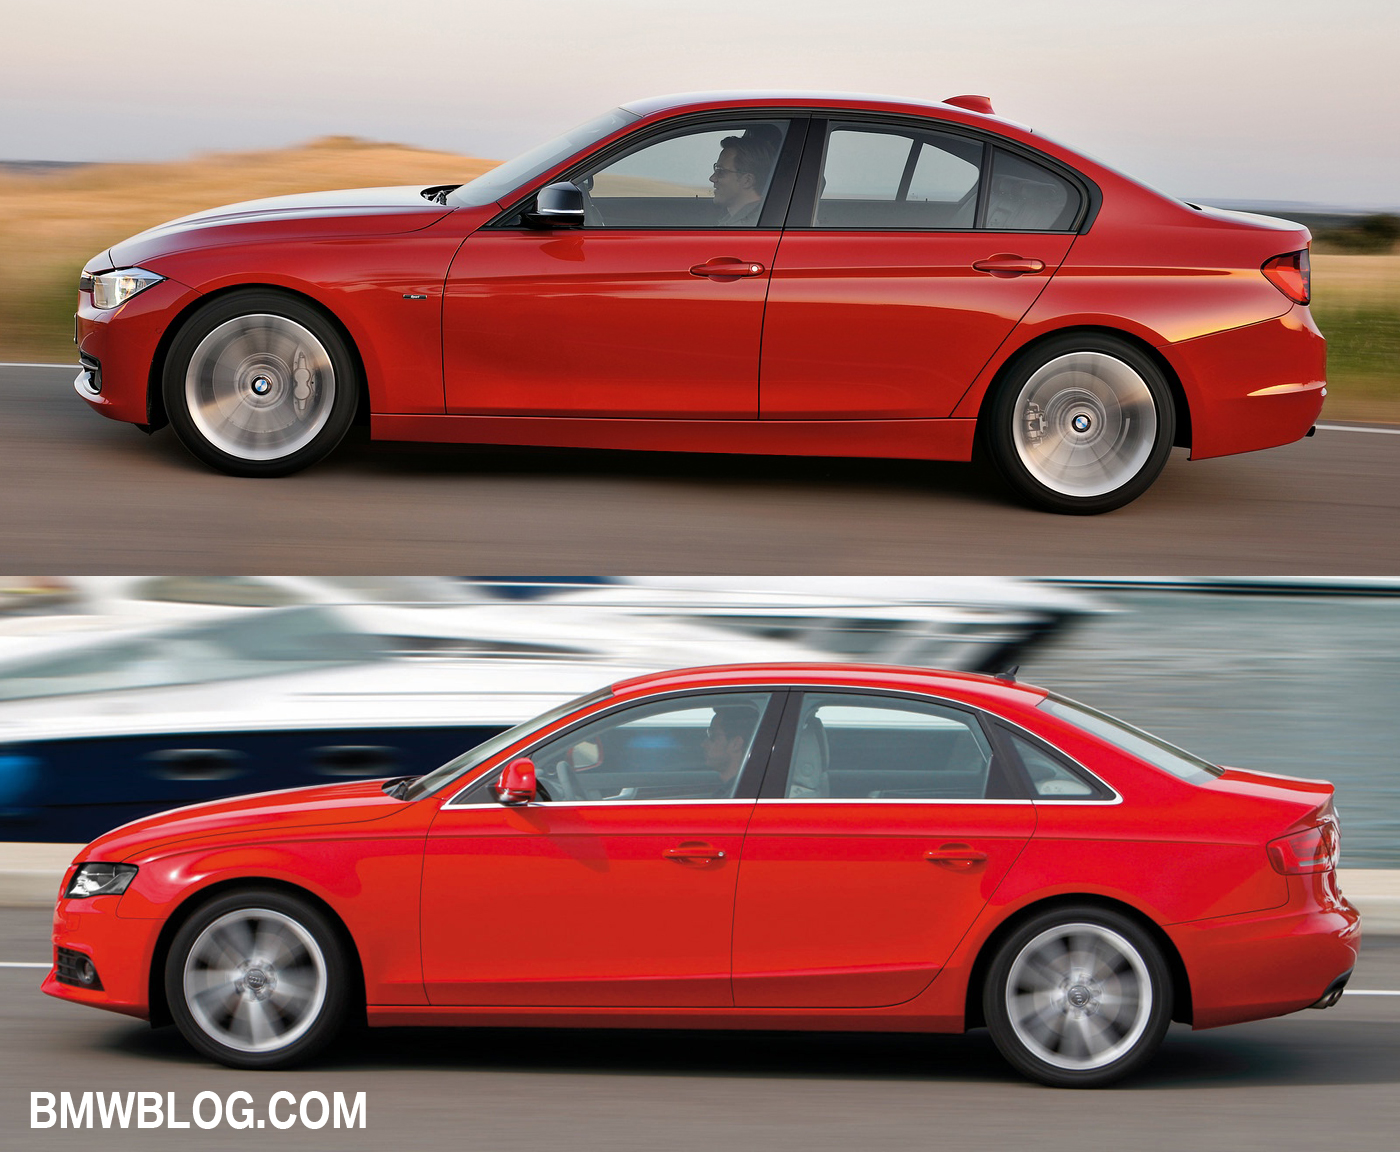 Audi a4 bmw 3 series comparison #3